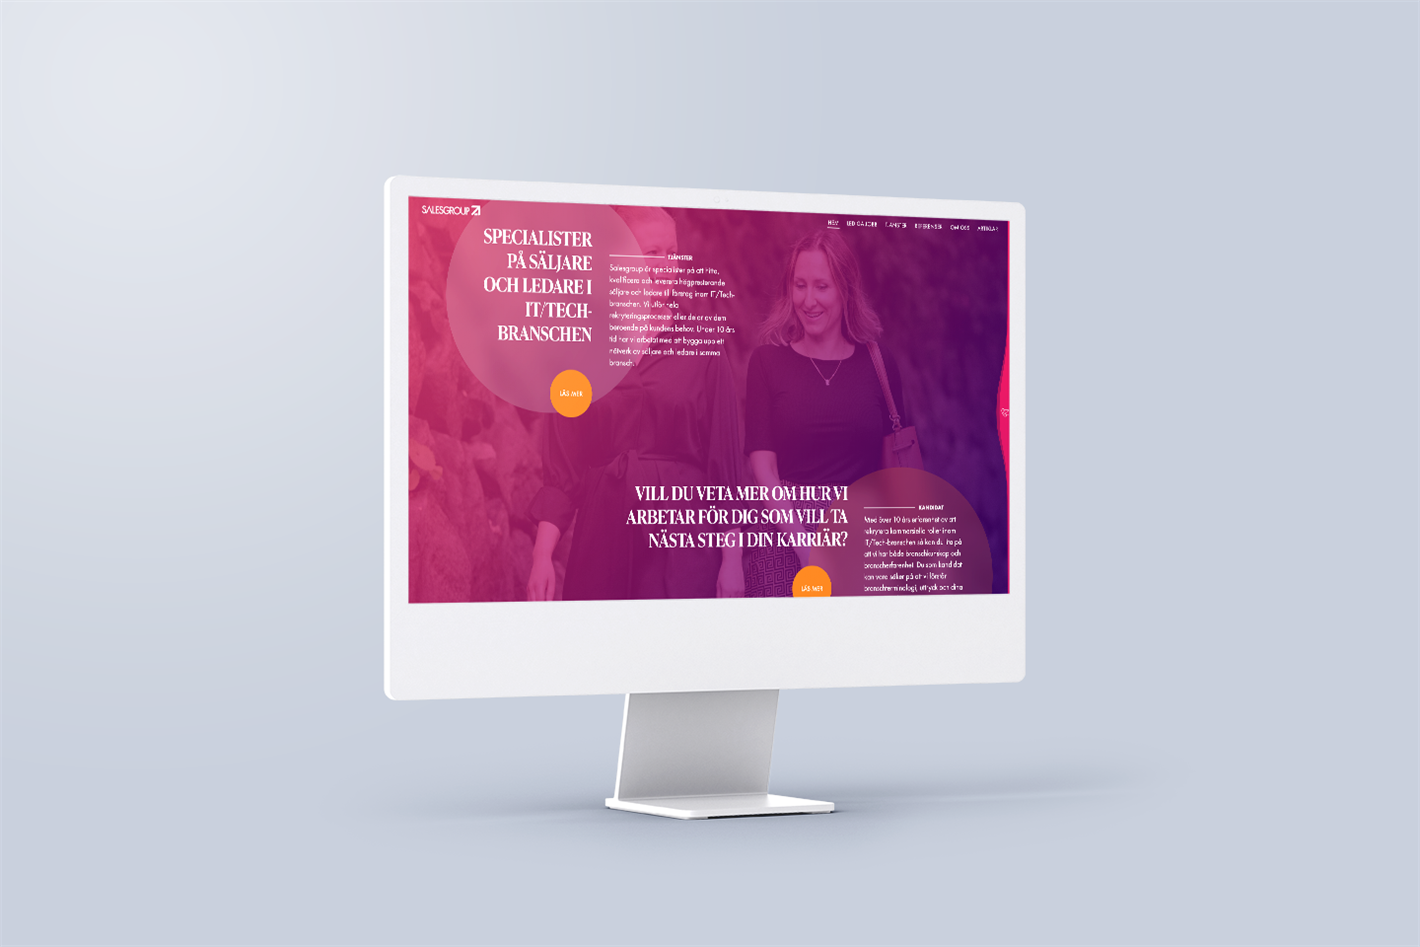 Nya hemsidan Sphinxly webbyrå skapat för Salesgroup, visas på en stor datorskärm